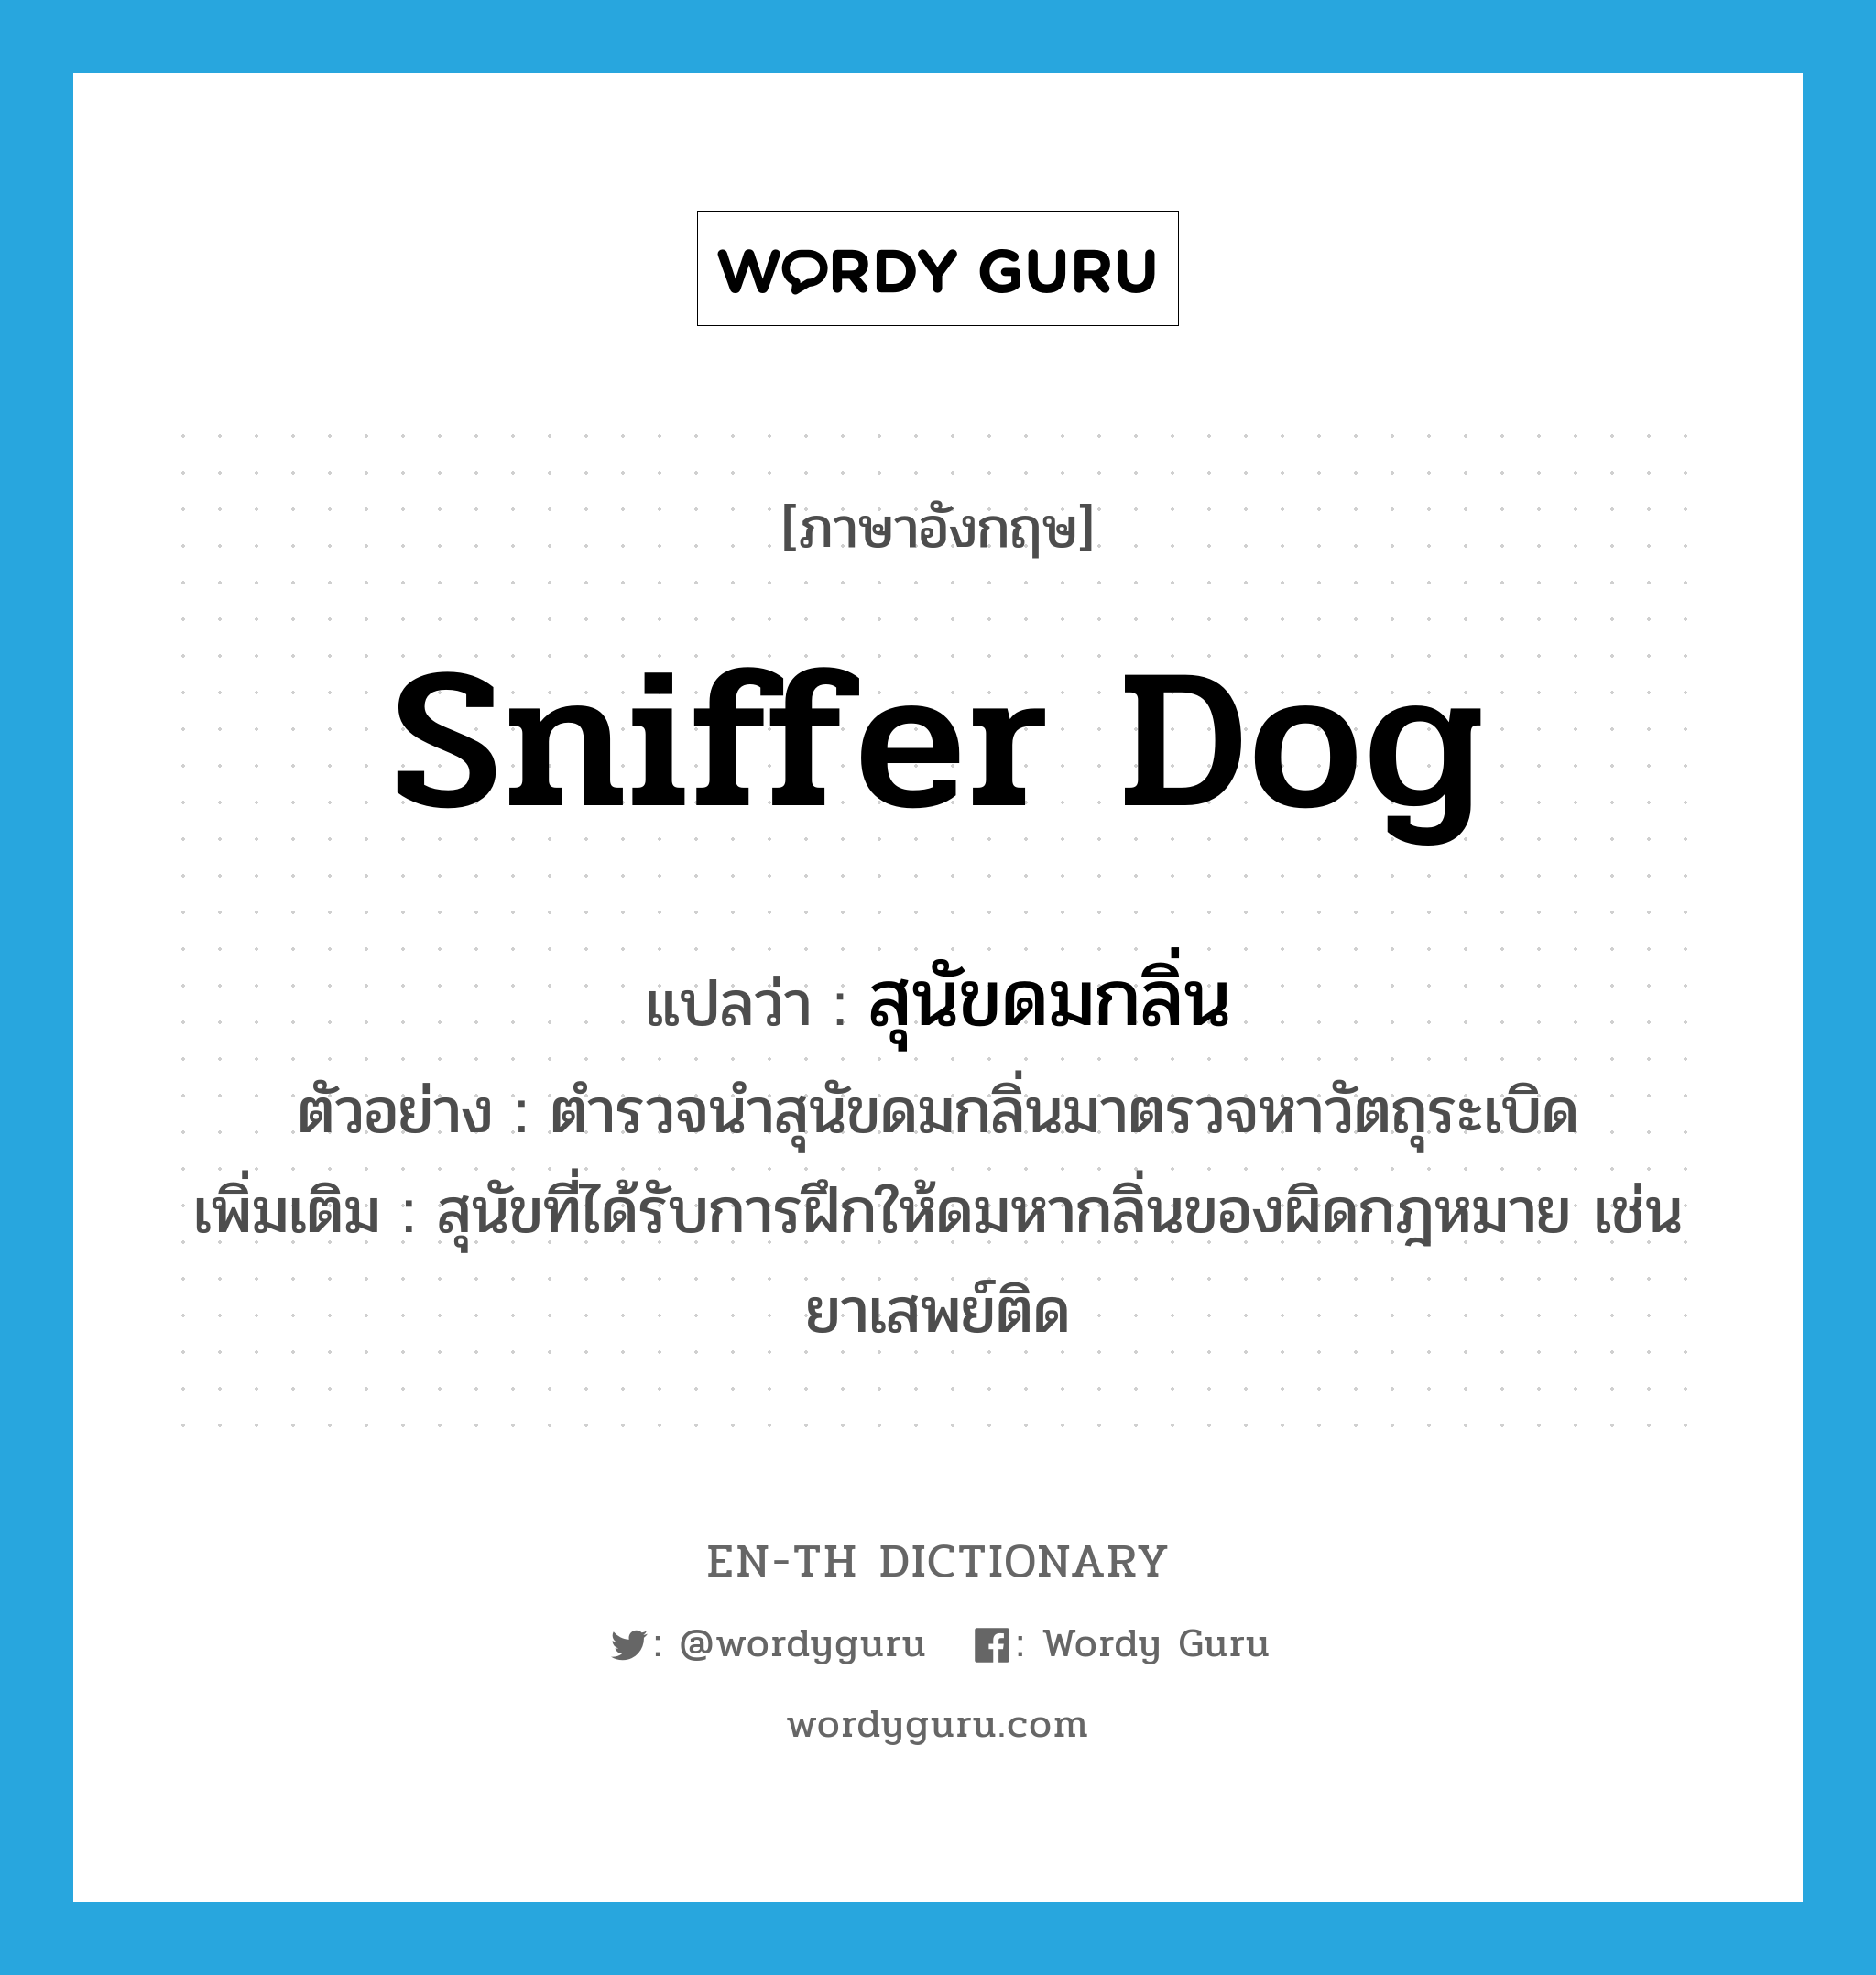 sniffer dog แปลว่า?, คำศัพท์ภาษาอังกฤษ sniffer dog แปลว่า สุนัขดมกลิ่น ประเภท N ตัวอย่าง ตำรวจนำสุนัขดมกลิ่นมาตรวจหาวัตถุระเบิด เพิ่มเติม สุนัขที่ได้รับการฝึกให้ดมหากลิ่นของผิดกฎหมาย เช่น ยาเสพย์ติด หมวด N